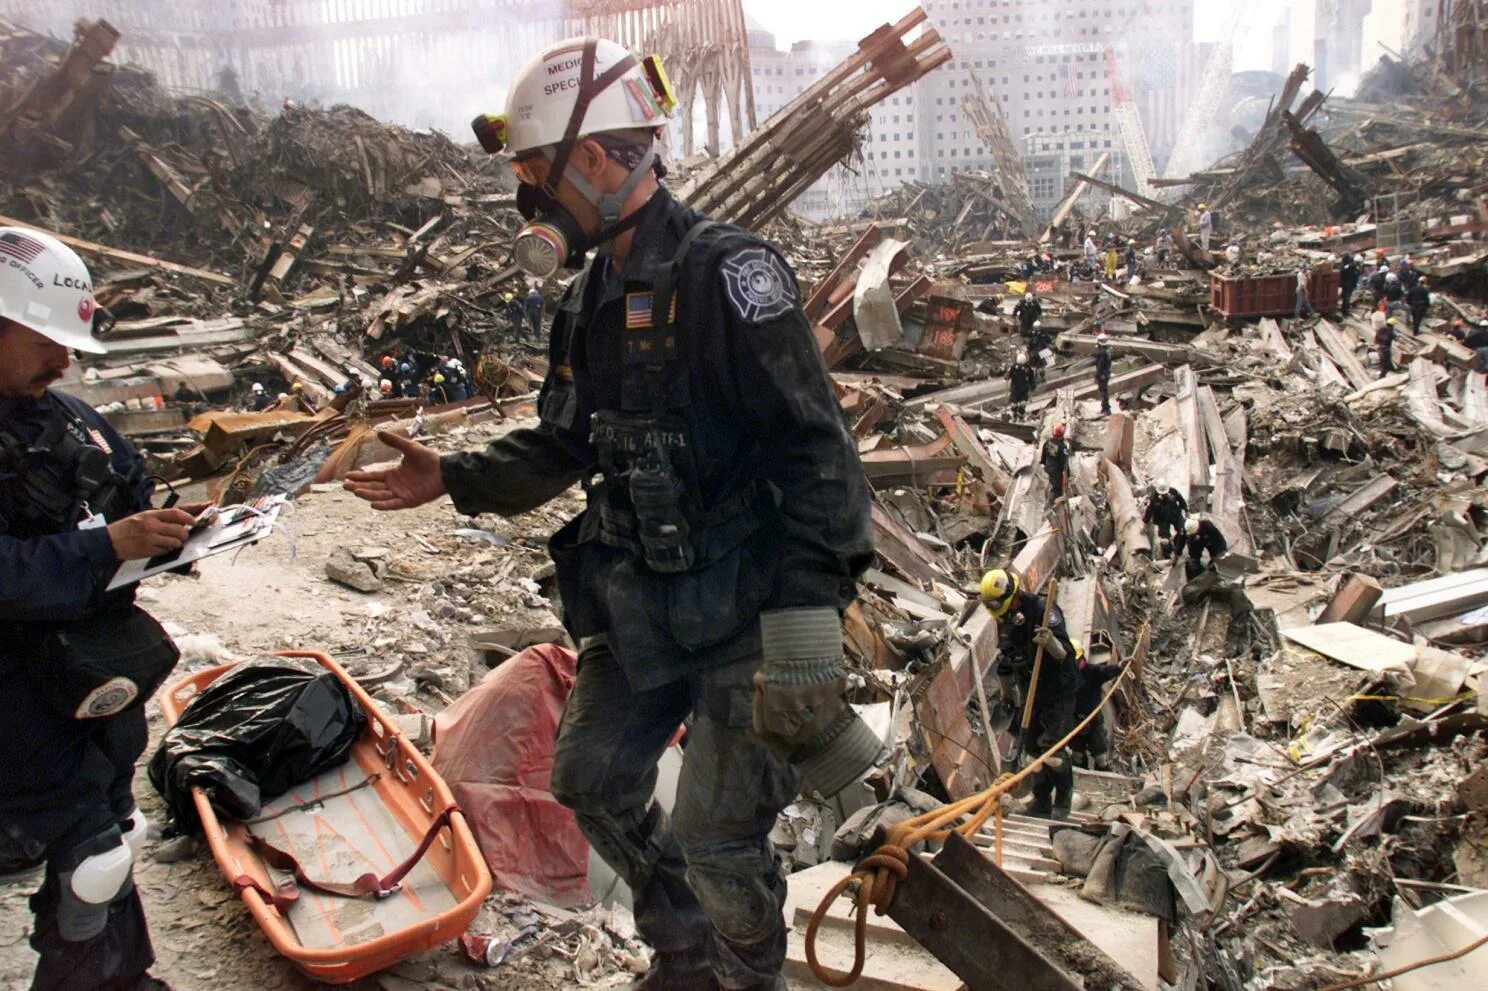 11 сентября сколько погибших 2001 башни. 11 Сентября 2001 башни Пентагон. Башни Близнецы 11 сентября жертвы. Спасатели 11 сентября 2001.